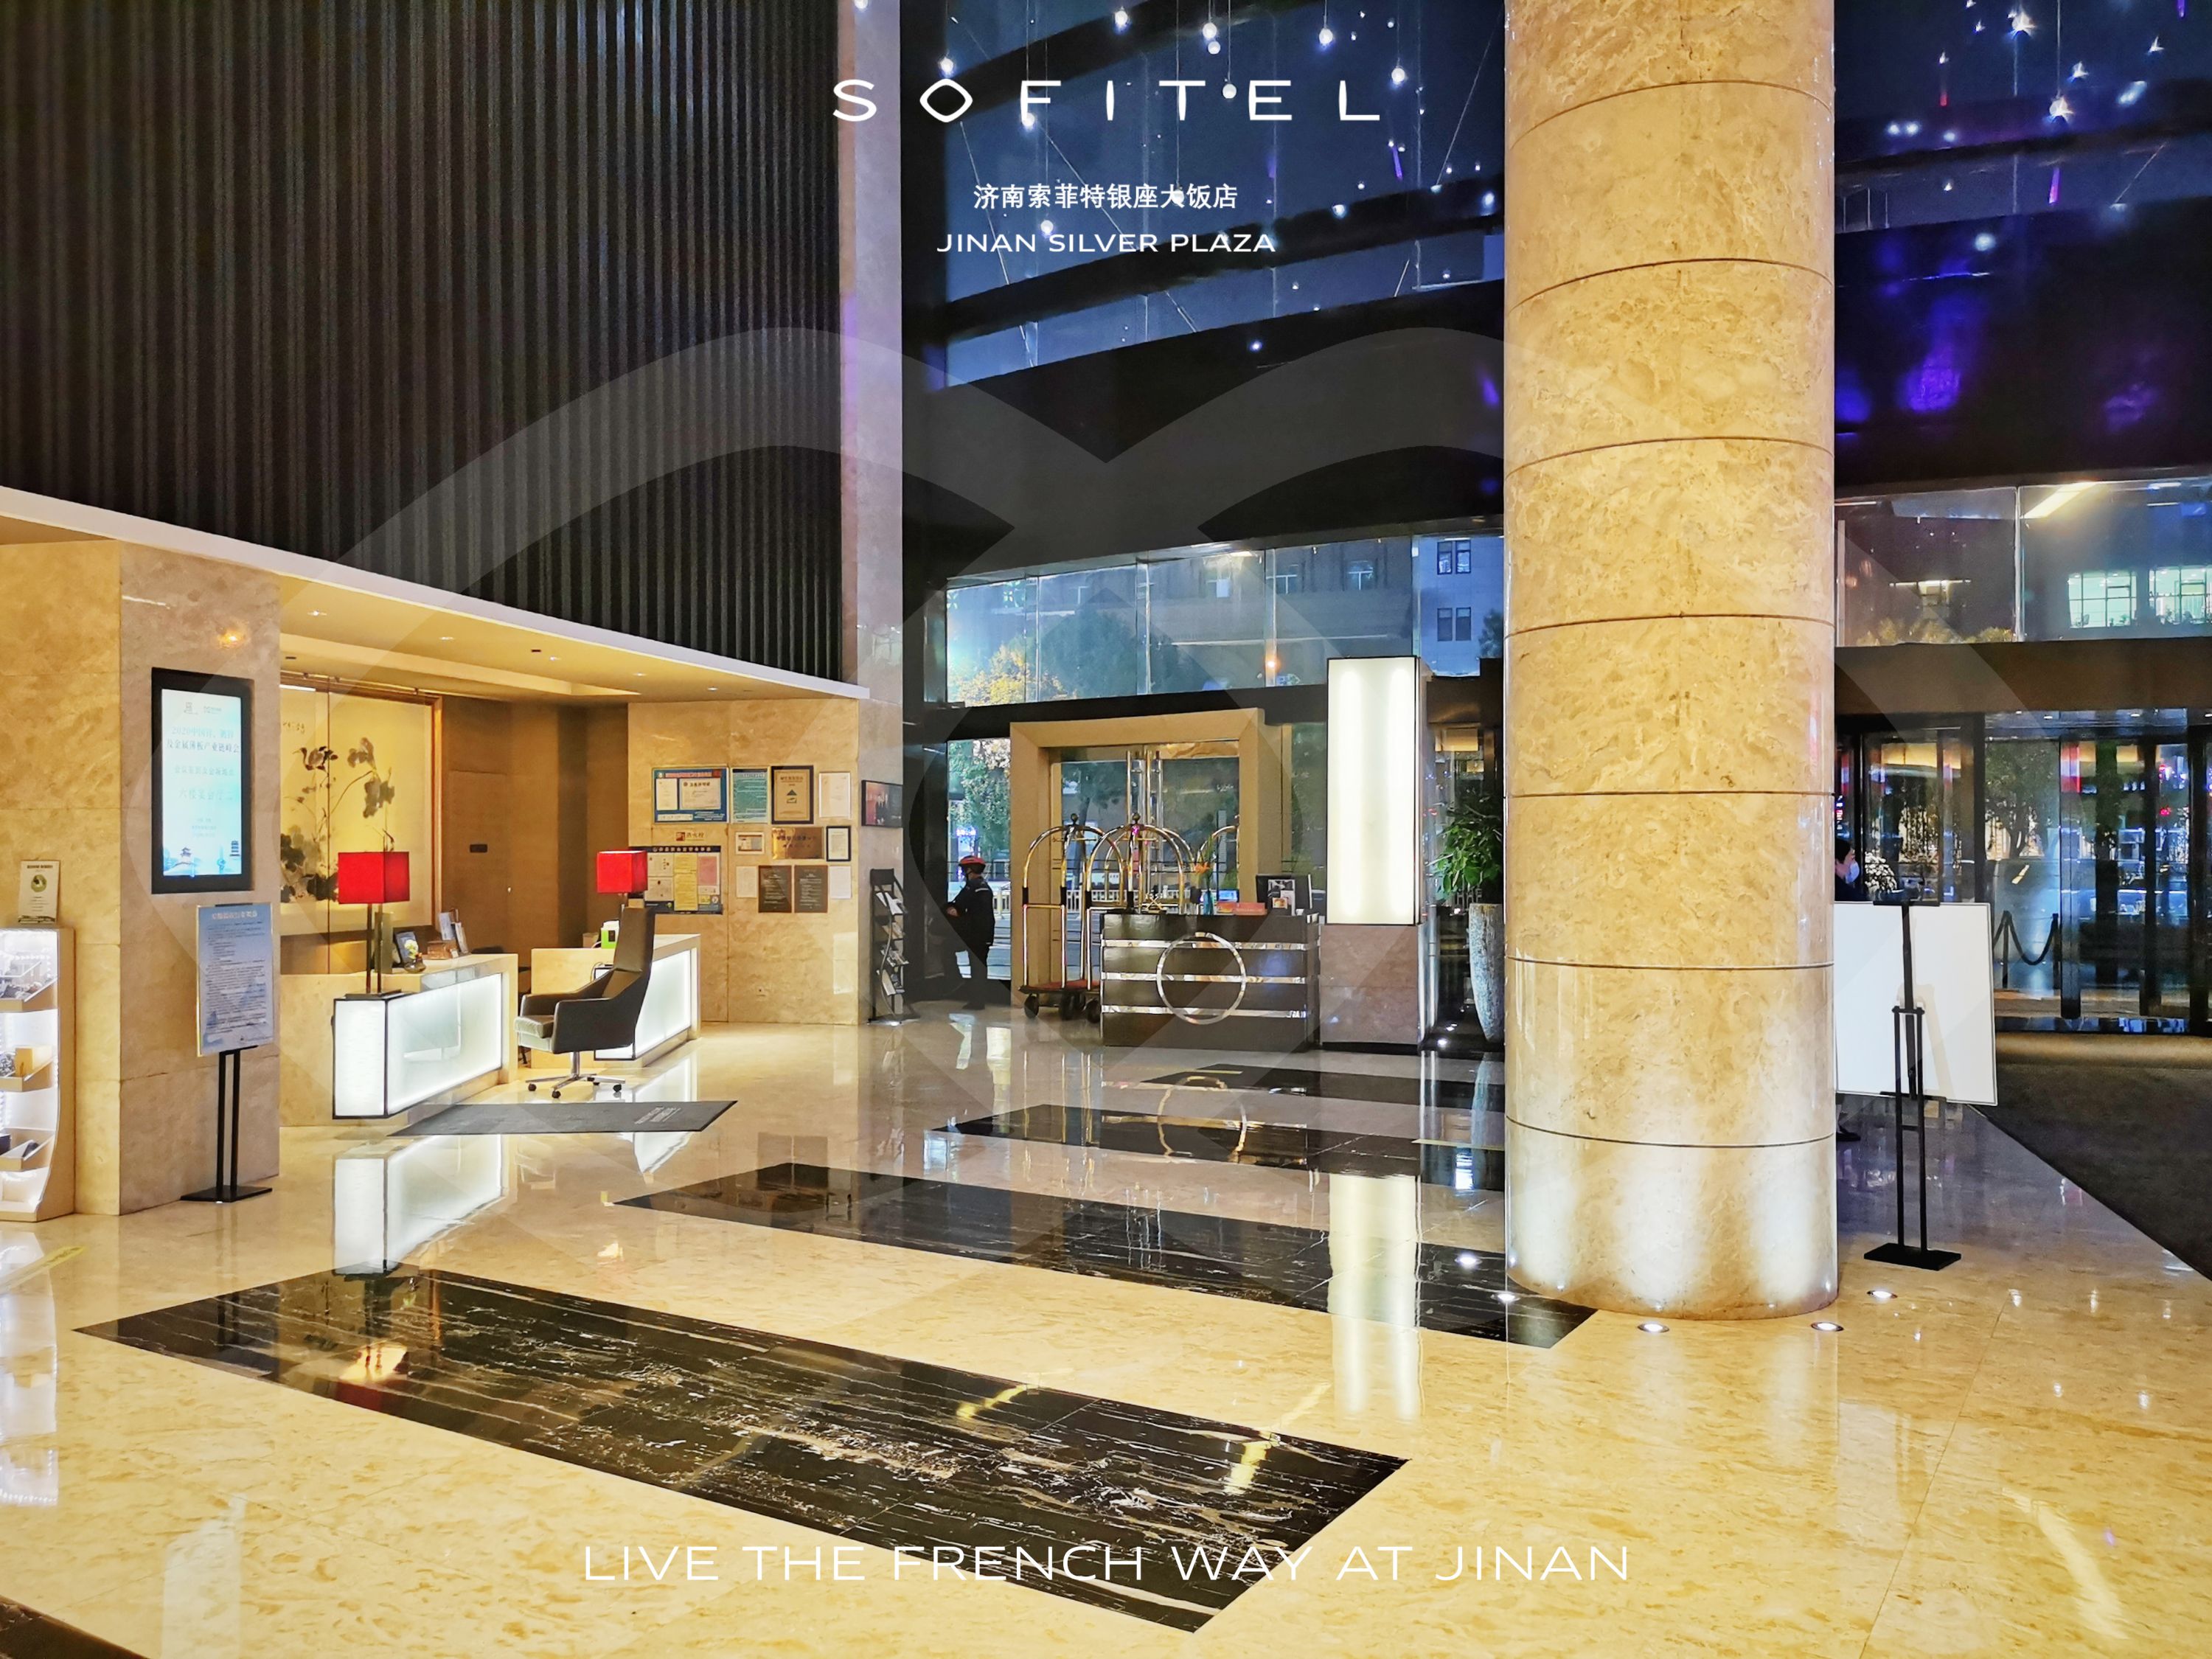 宾客关系是索菲特服务理念的核心济南索菲特银座大饭店入住体验